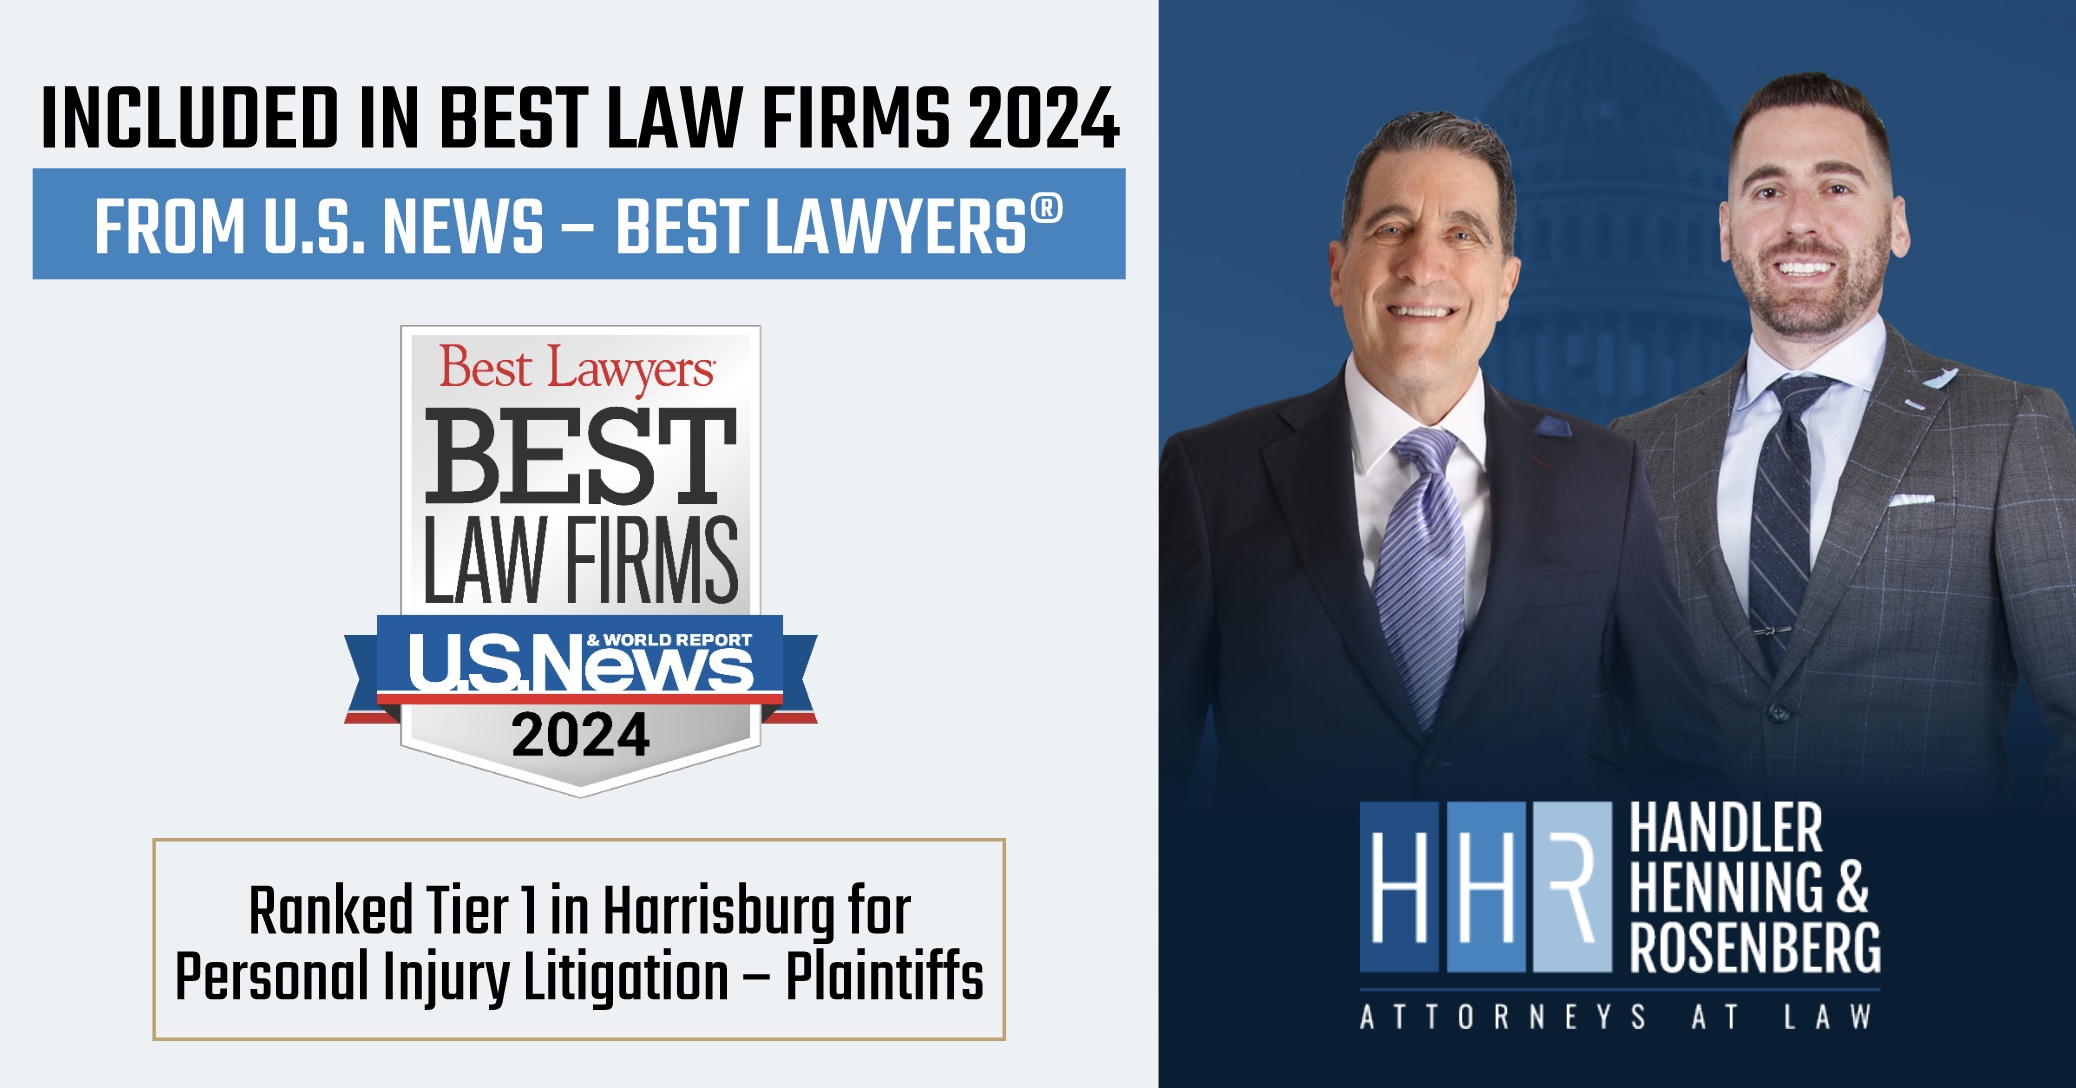 HHR Best Law Firms 2024 